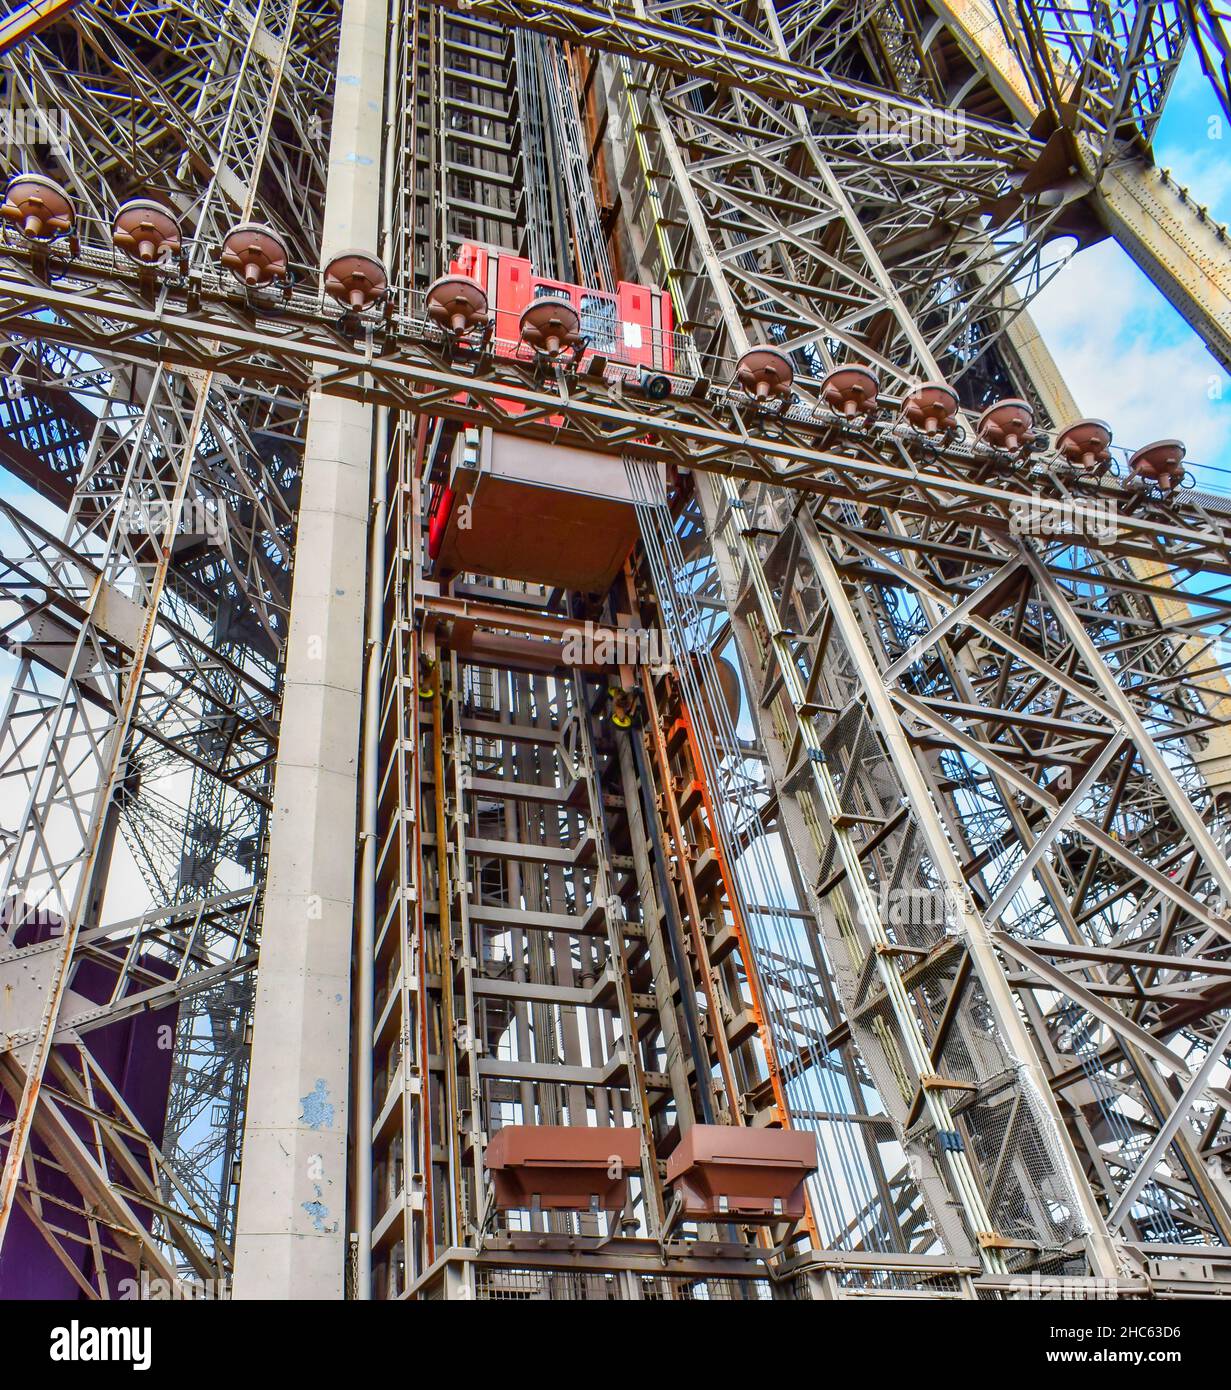 Ascensor elevador y estructura metálica de la torre Eiffel de París, Francia Foto de stock